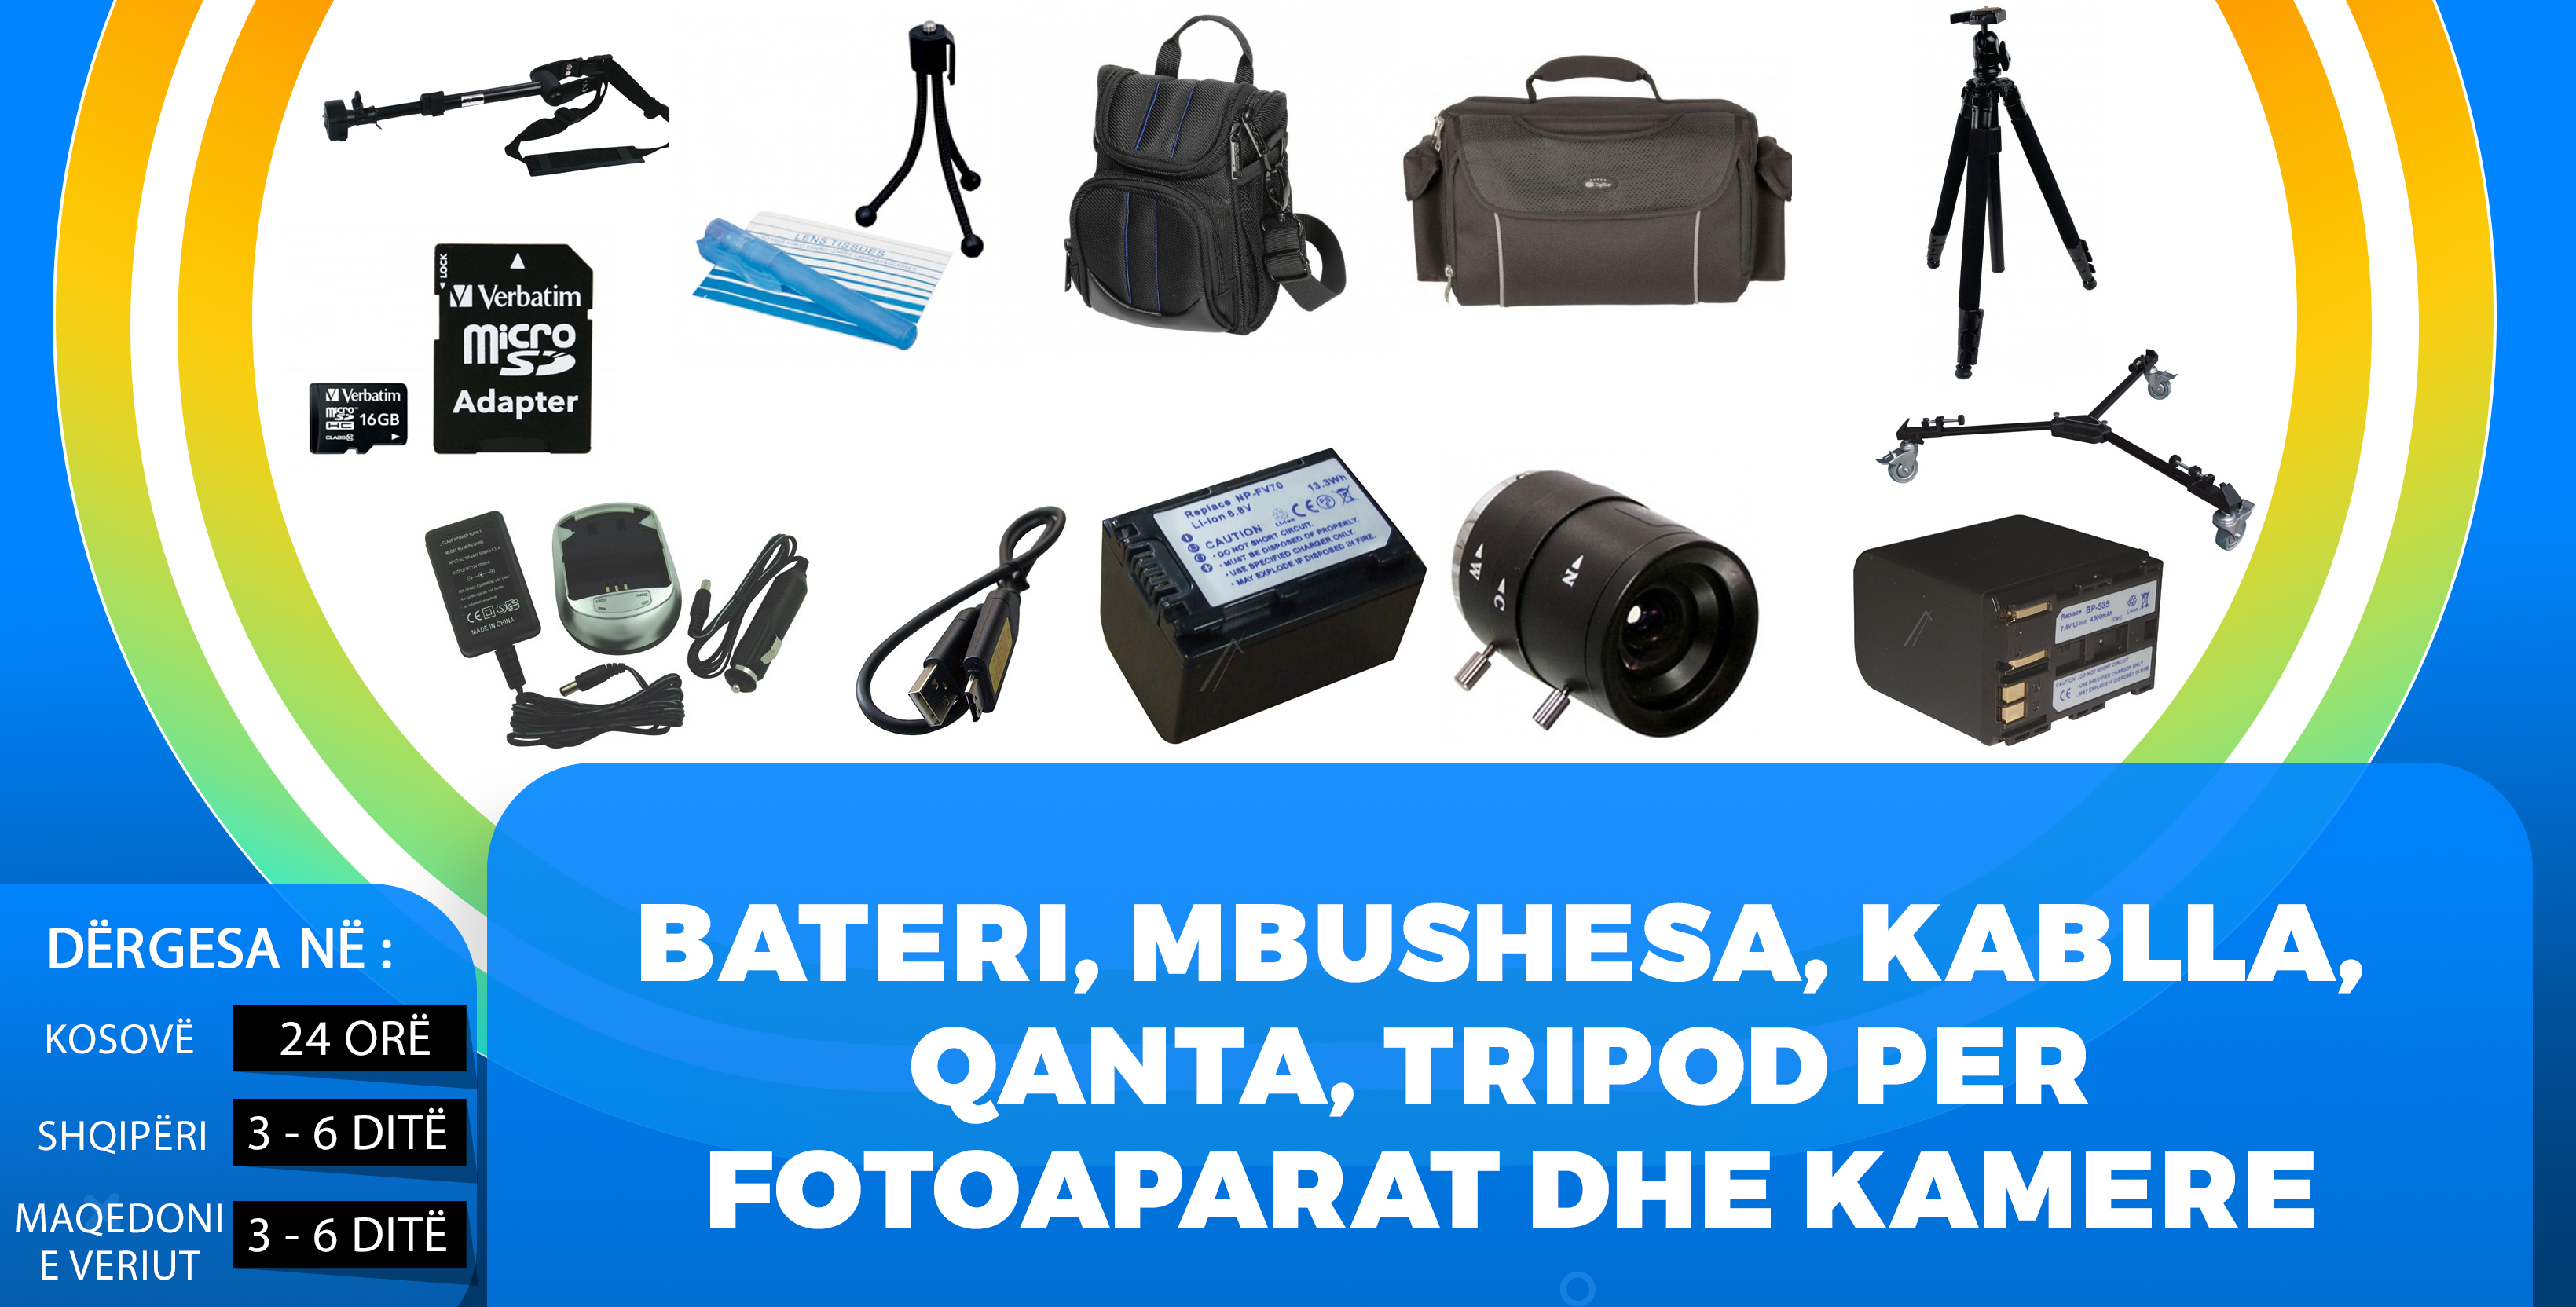 Bateri, mbushesa, kablla, qanta, tripod per fotoaparat dhe kamere